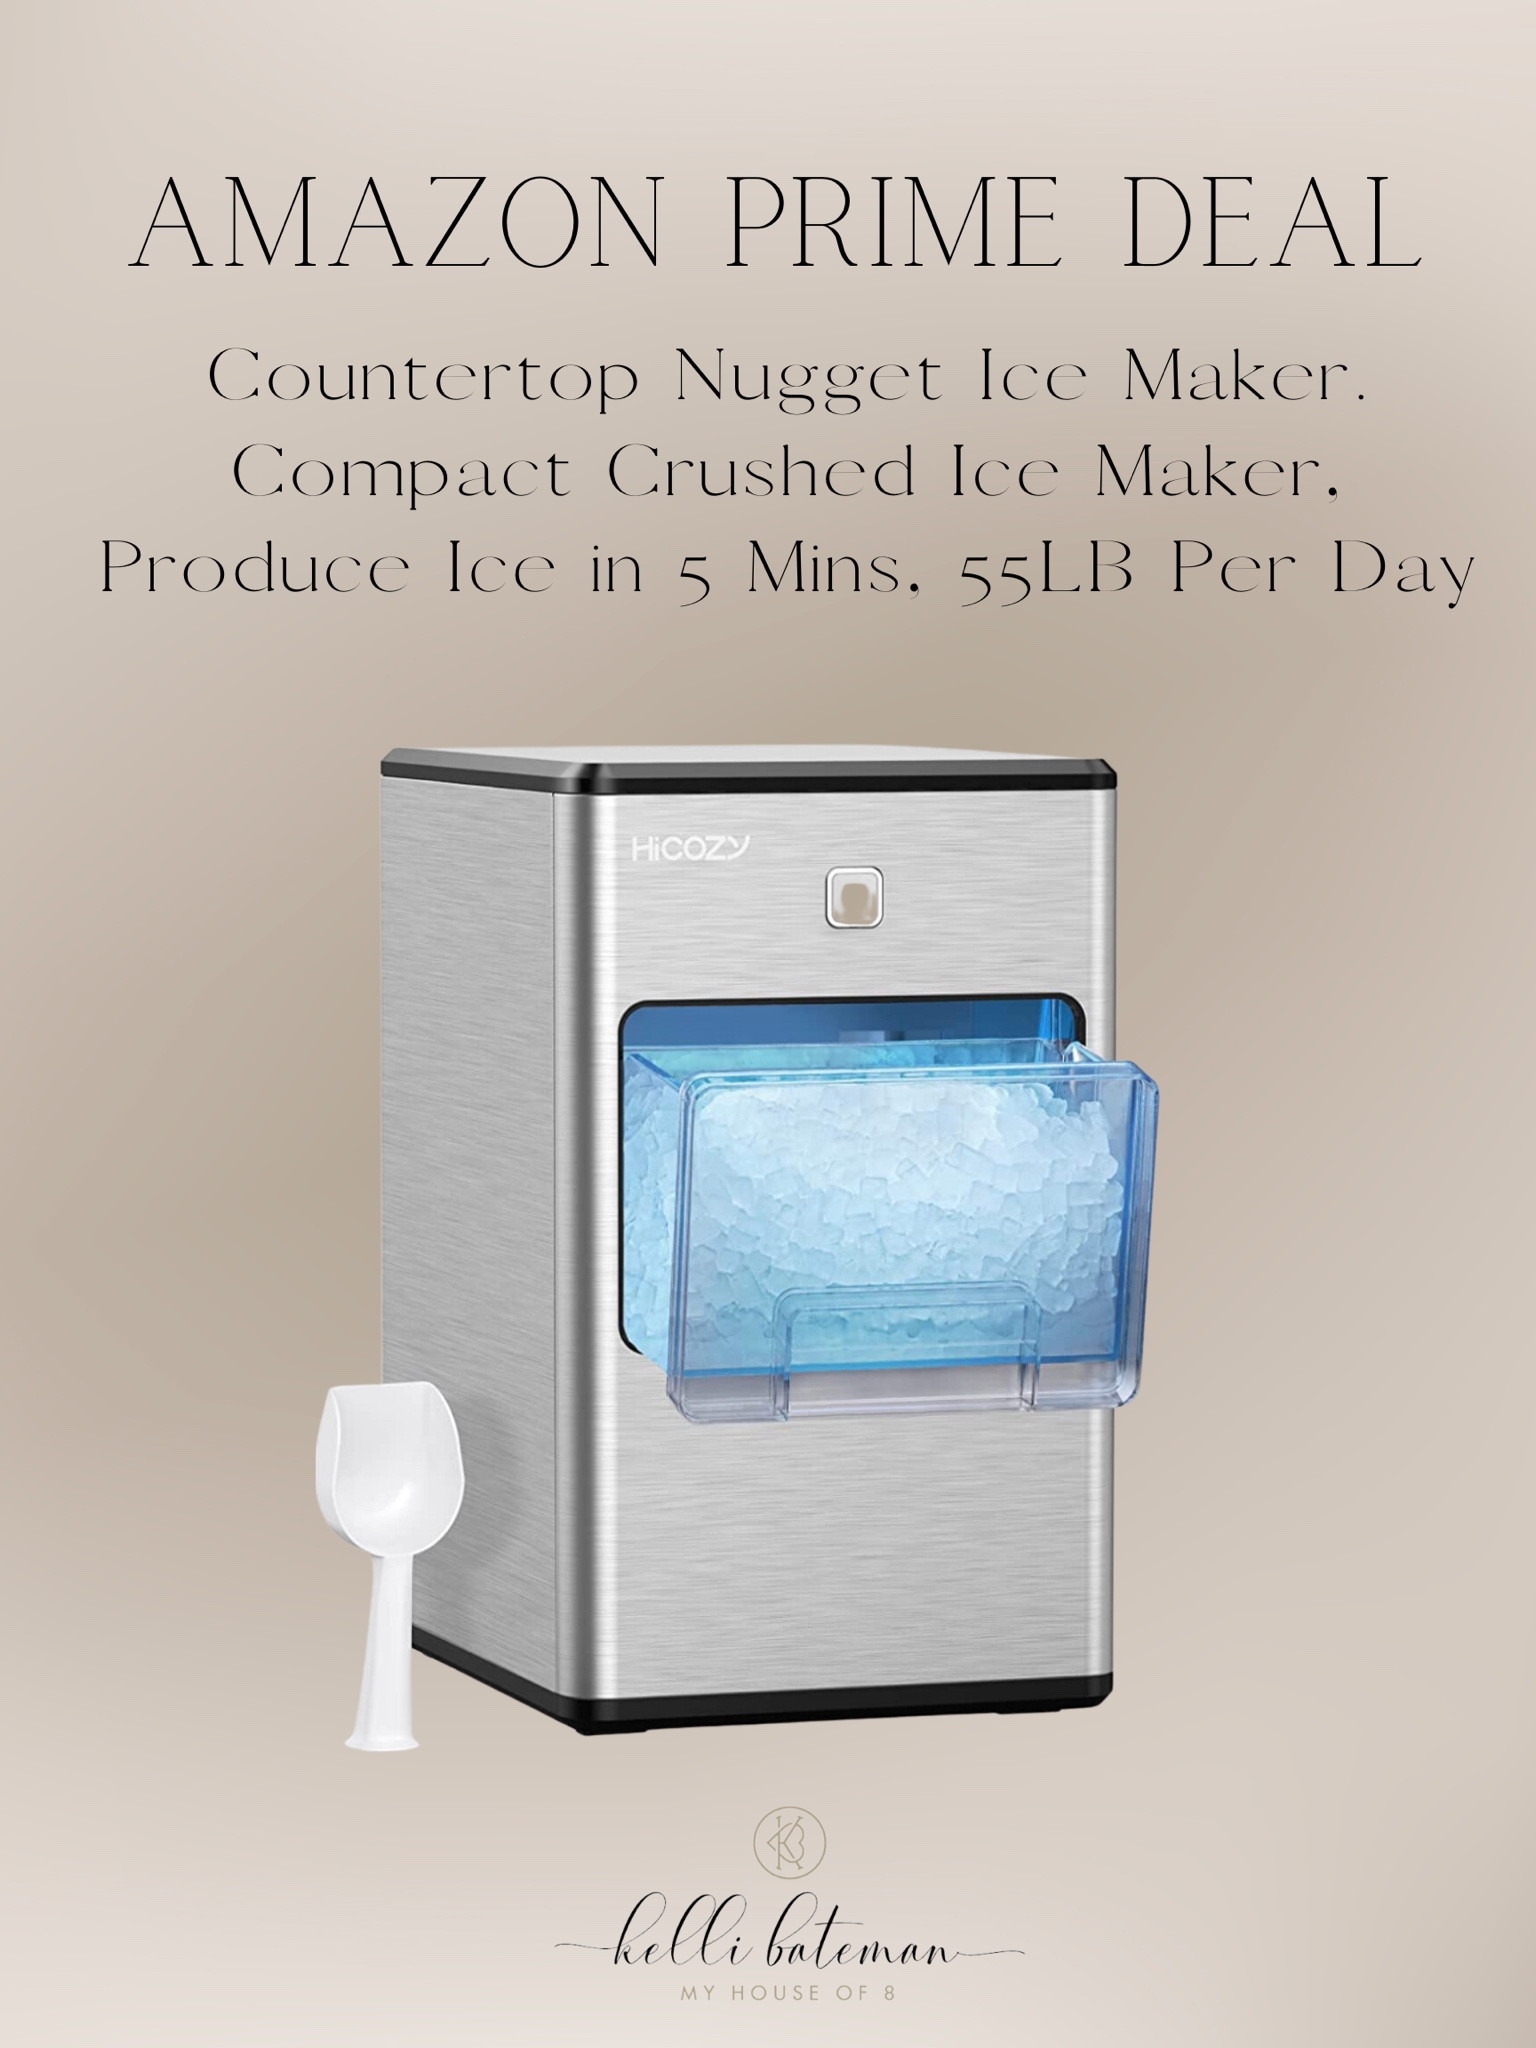 HiCozy Countertop Nugget Ice Maker